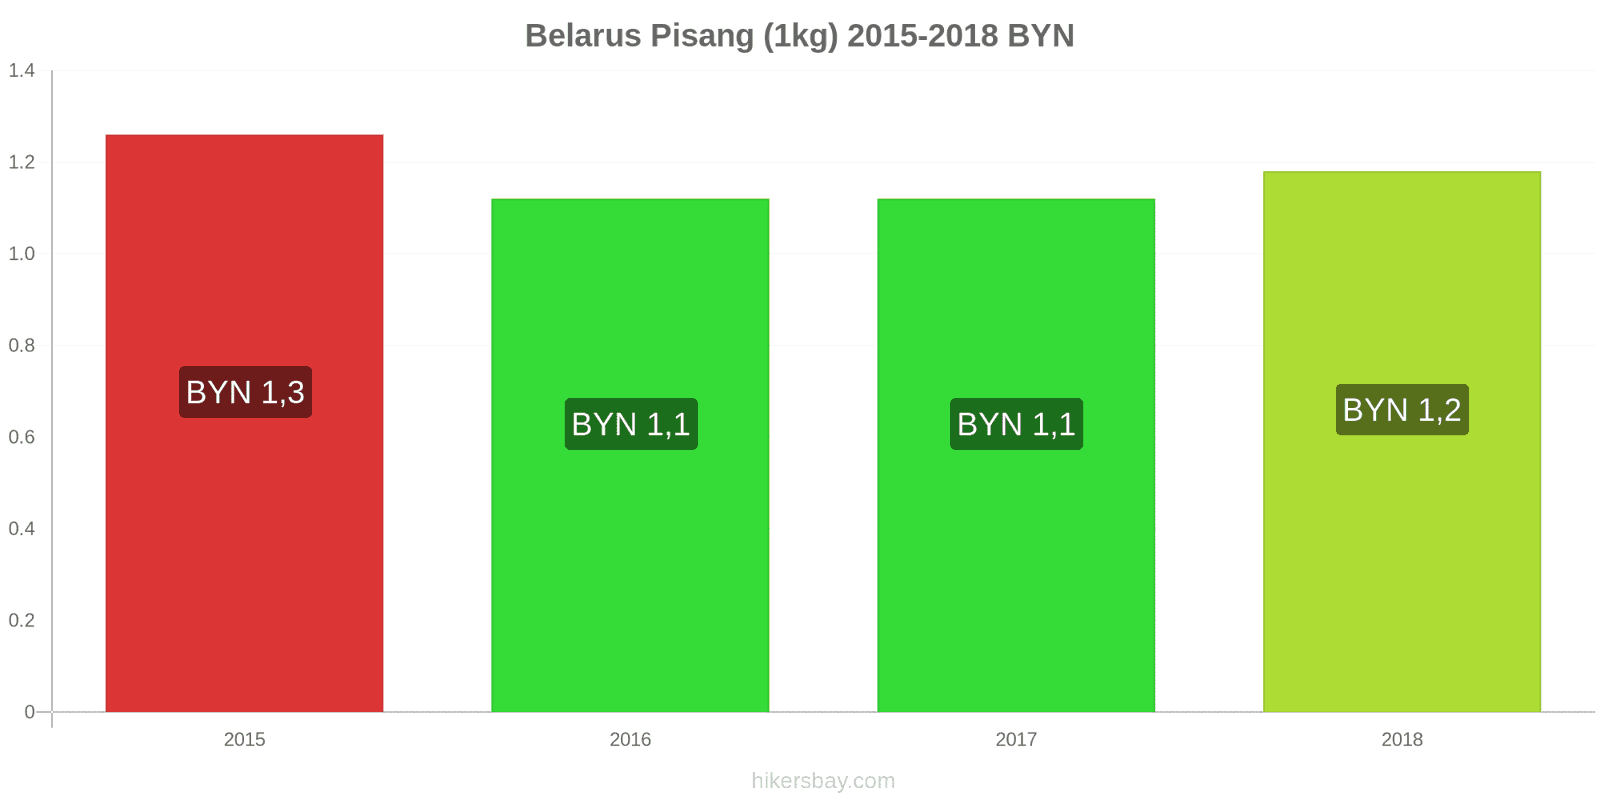 Belarus perubahan harga Pisang (1kg) hikersbay.com